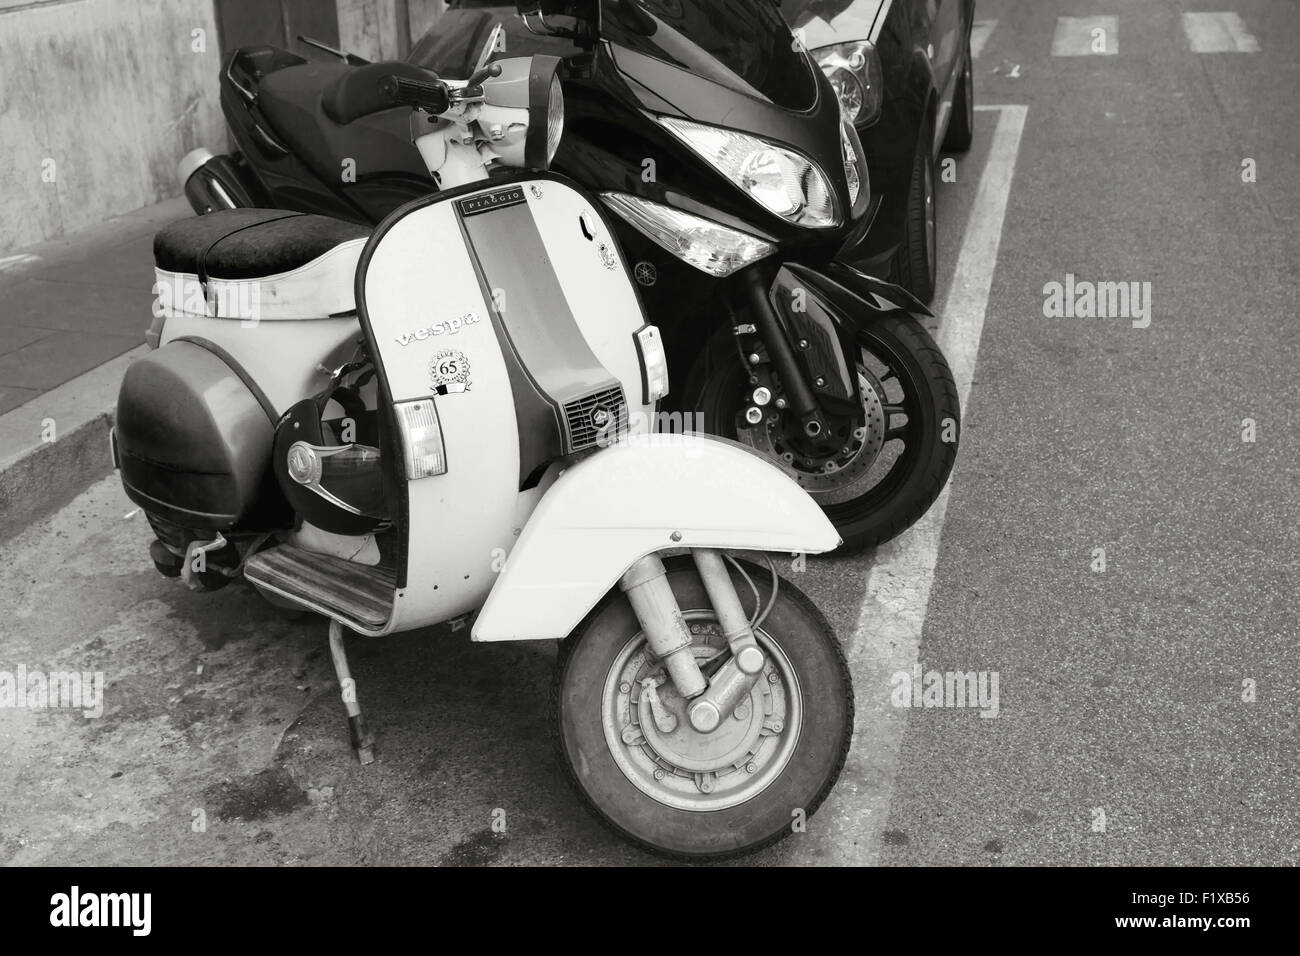 Roma, Italia - 07 agosto 2015: Classico stile vecchia Vespa scooter stand parcheggiato su una strada in città Foto Stock